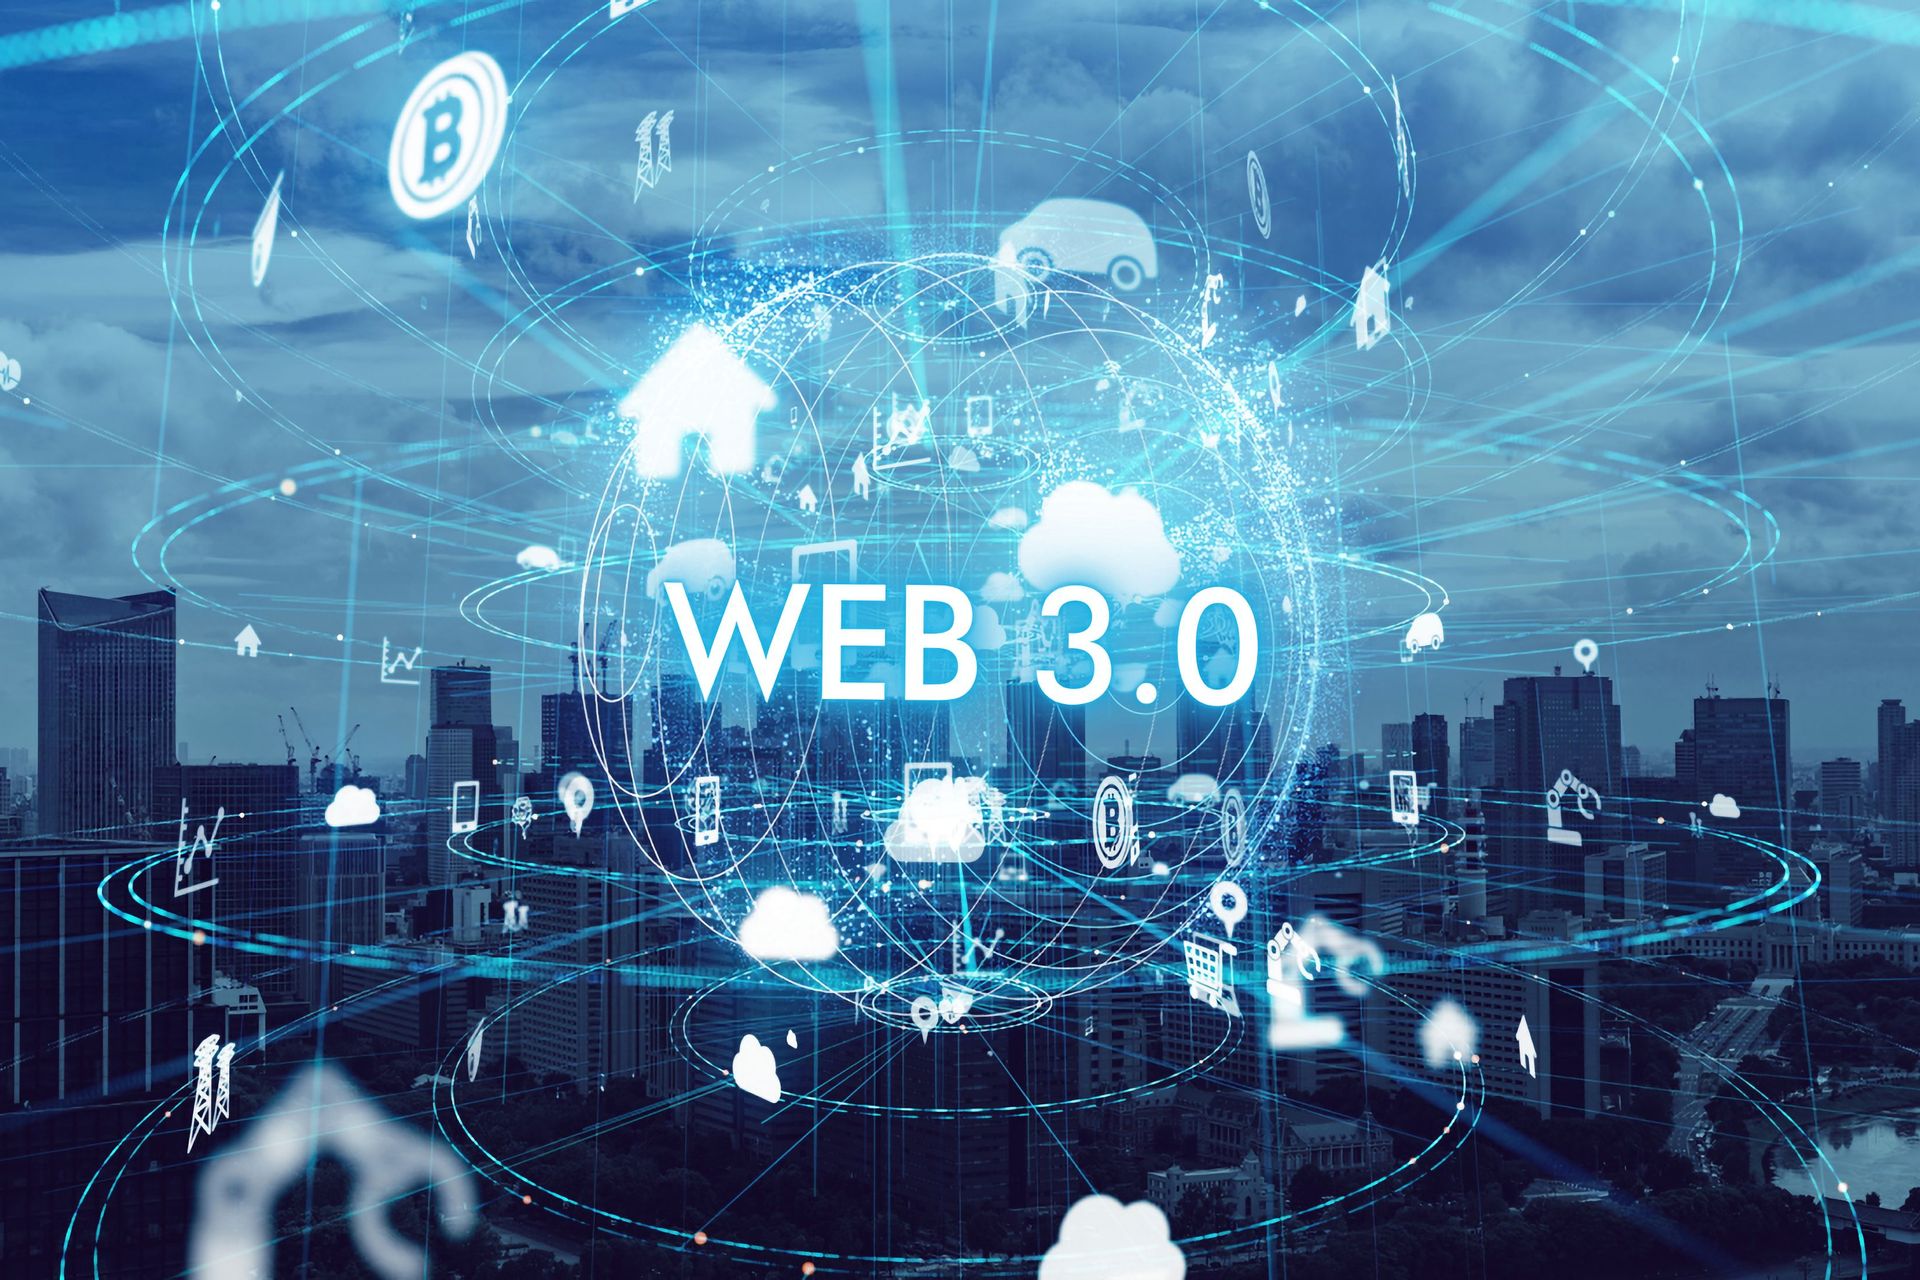 Web 3.0 і Metaverse сапраўды будуць прадстаўляць будучыню тэхналагічнага чалавека і будучыню Інтэрнэту